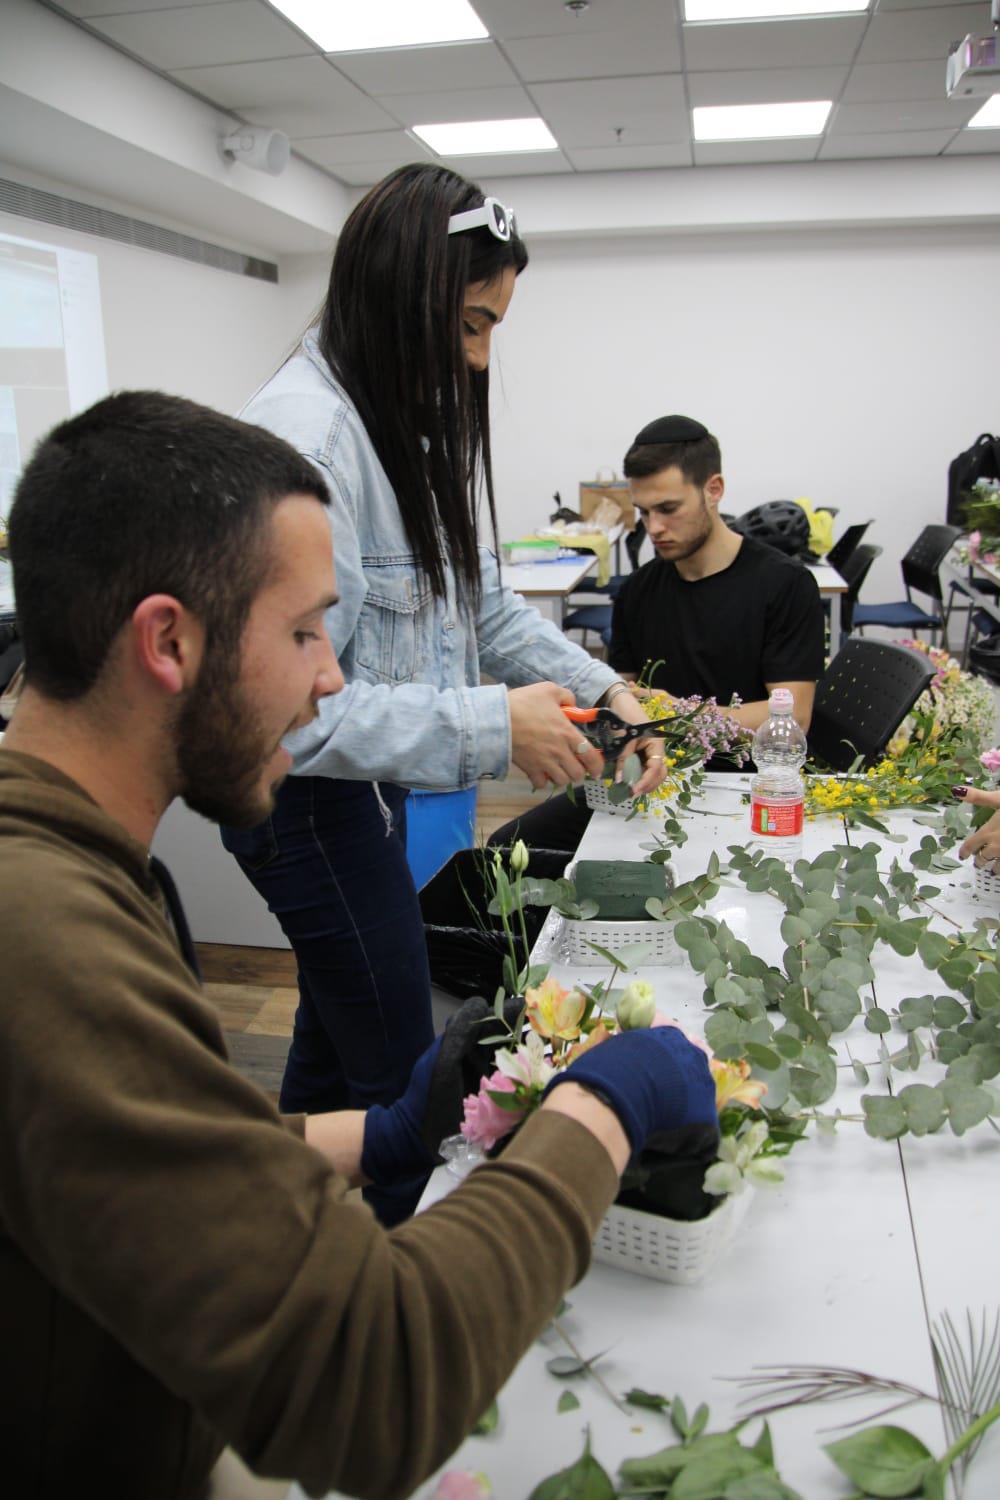 גלרייה - שיעור עיצוב ושזירת פרחים בקורס ניהול עיצוב והפקת אירועים מחזור 33, 11 מתוך 22